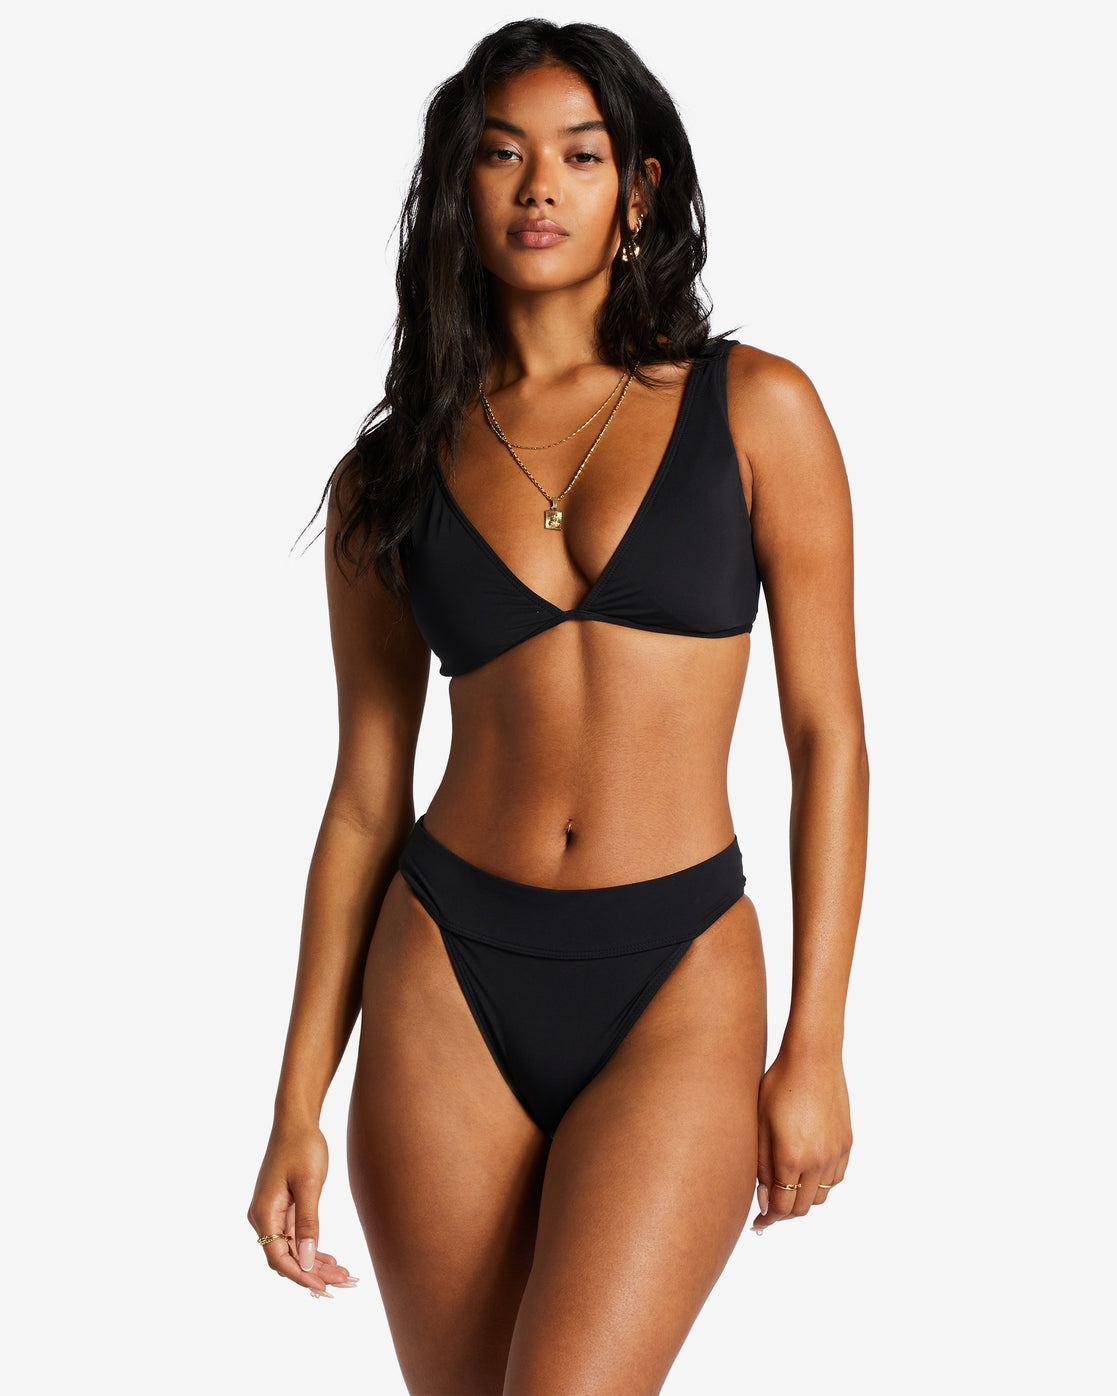 Women's Bikinis - Tops & Bottoms, swimsuit bottoms for women